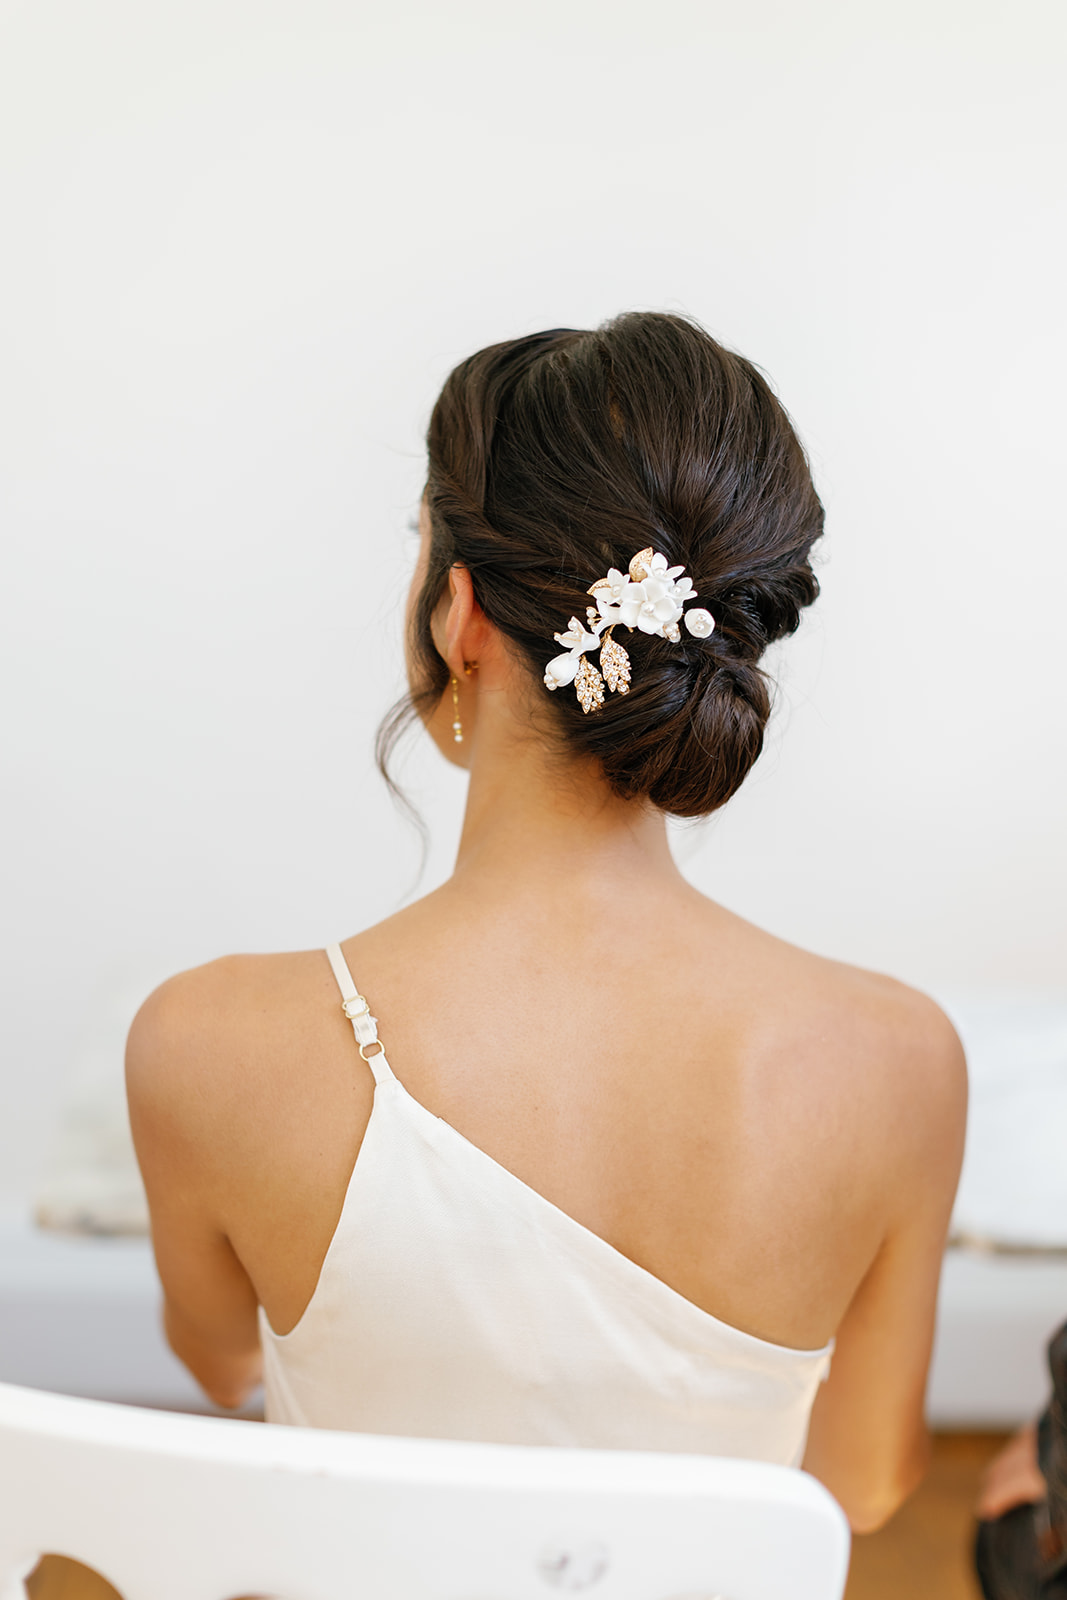 bride's details at the back